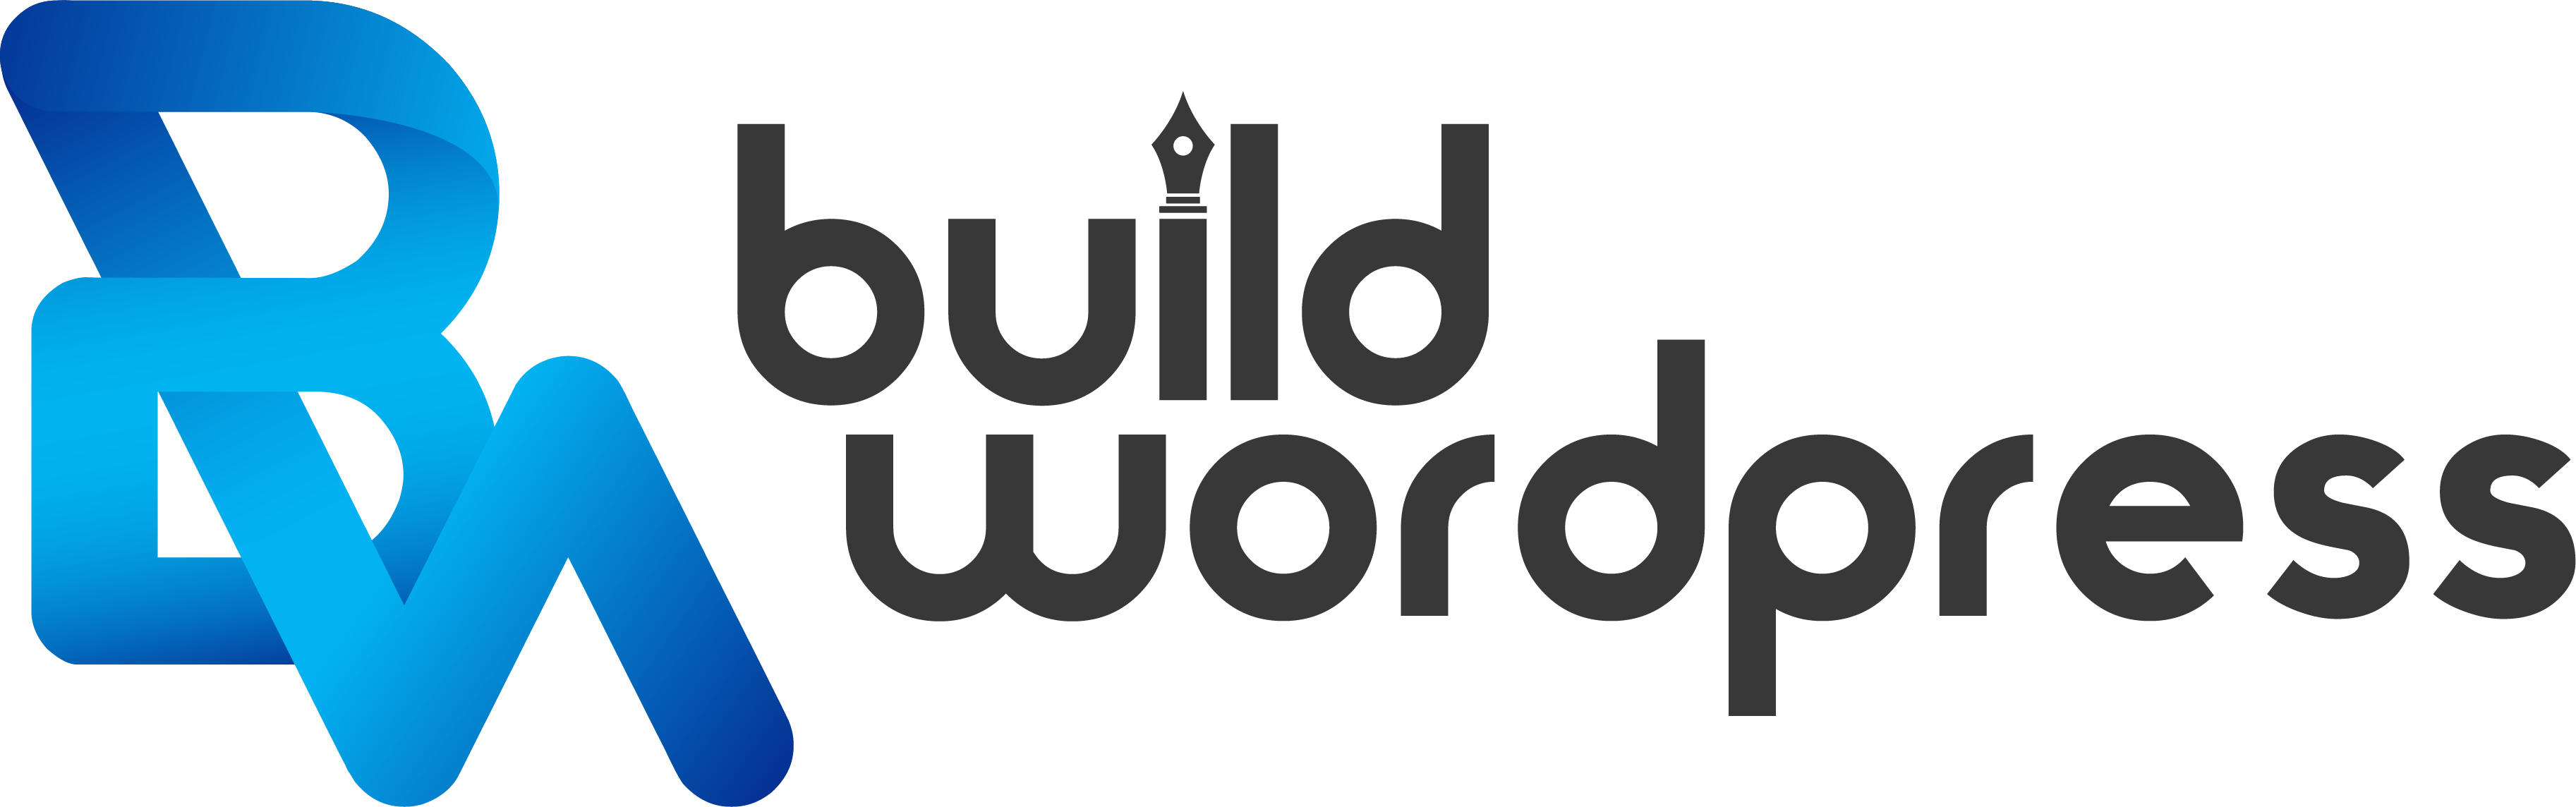 BuildWordpress